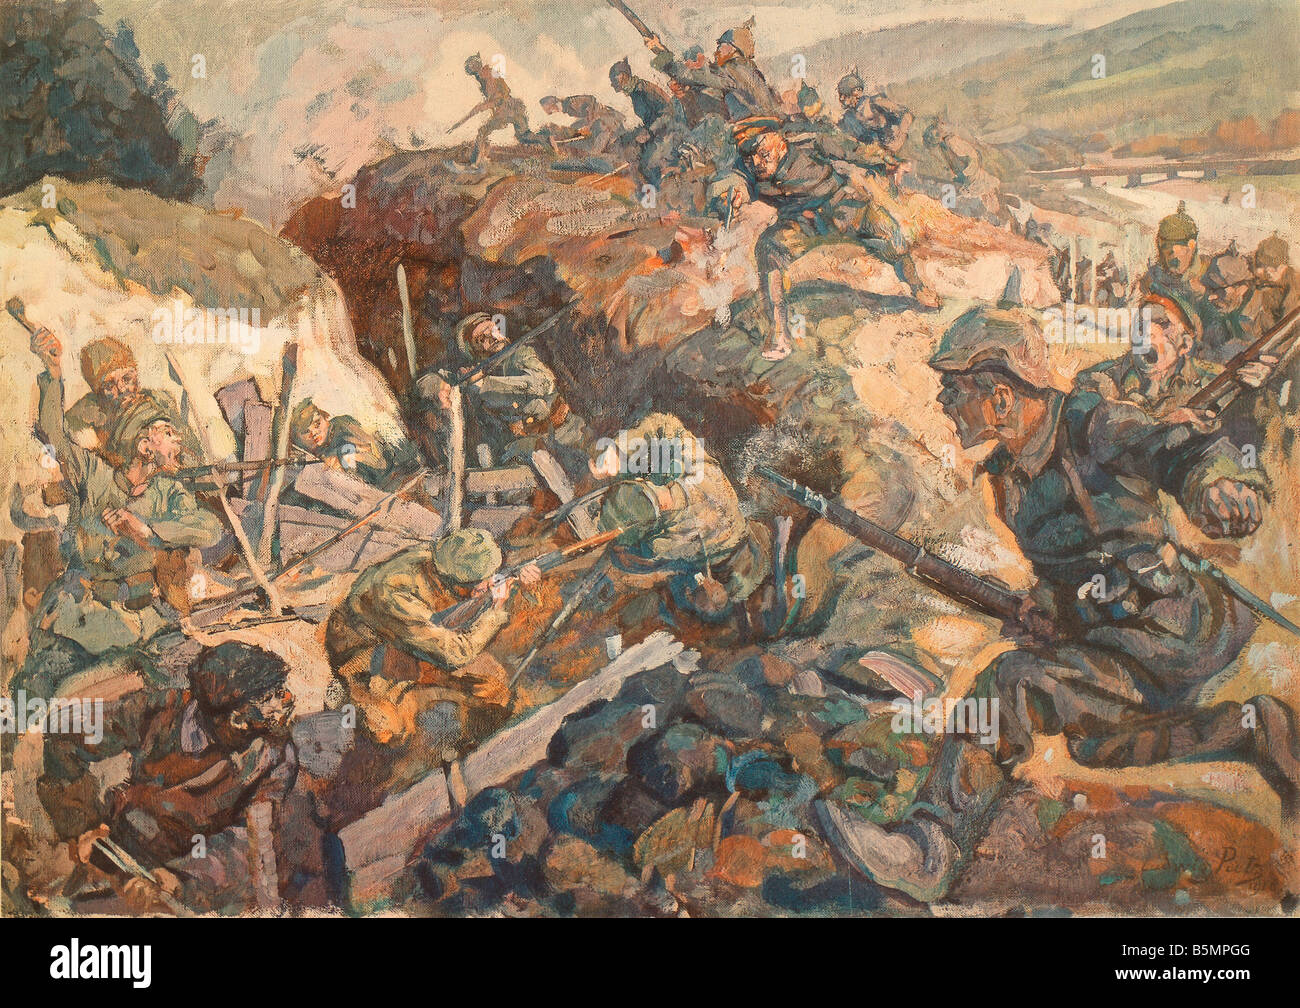 9 1915 5 1 A1 1 Bataille de Gorlice 1915 Ludwig Putz World War 1 1914 18 Front de l'Est Bataille de Gorlice Tarnow 1er au 3 mai 191 Banque D'Images